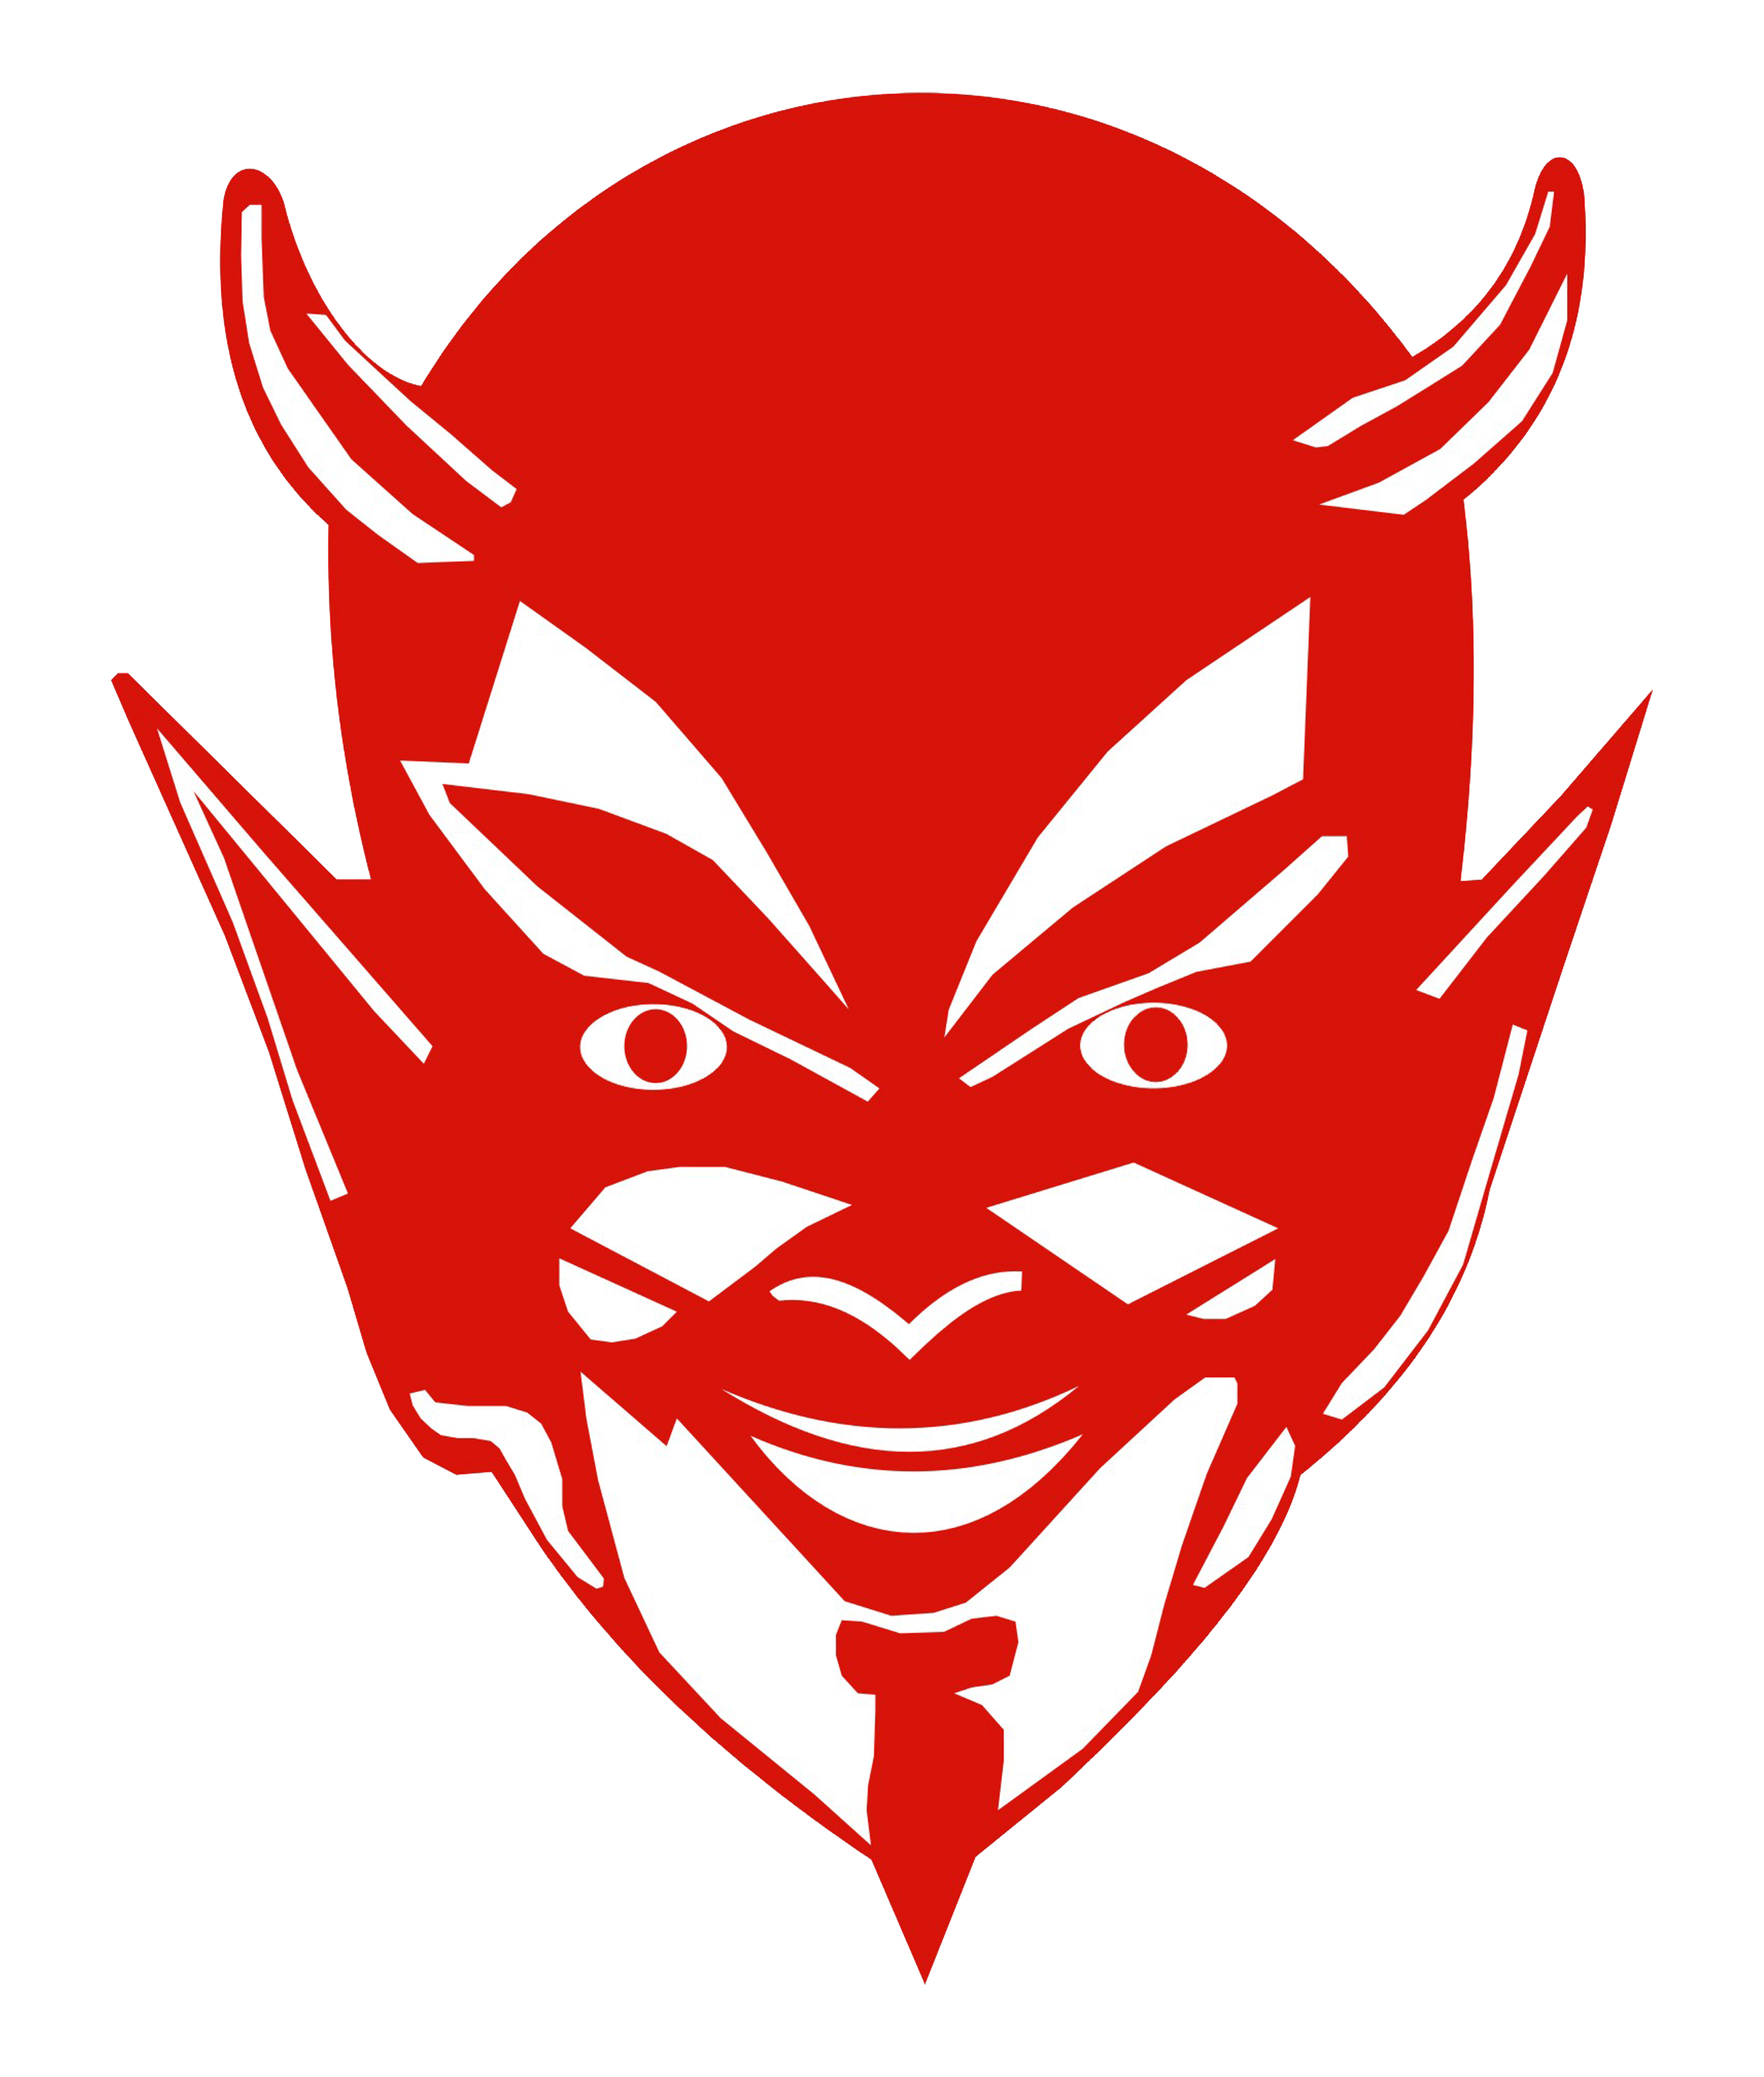 West Lafayette Swimmer Red Devil Logo - Richmond - Team Home Richmond Red Devils Sports